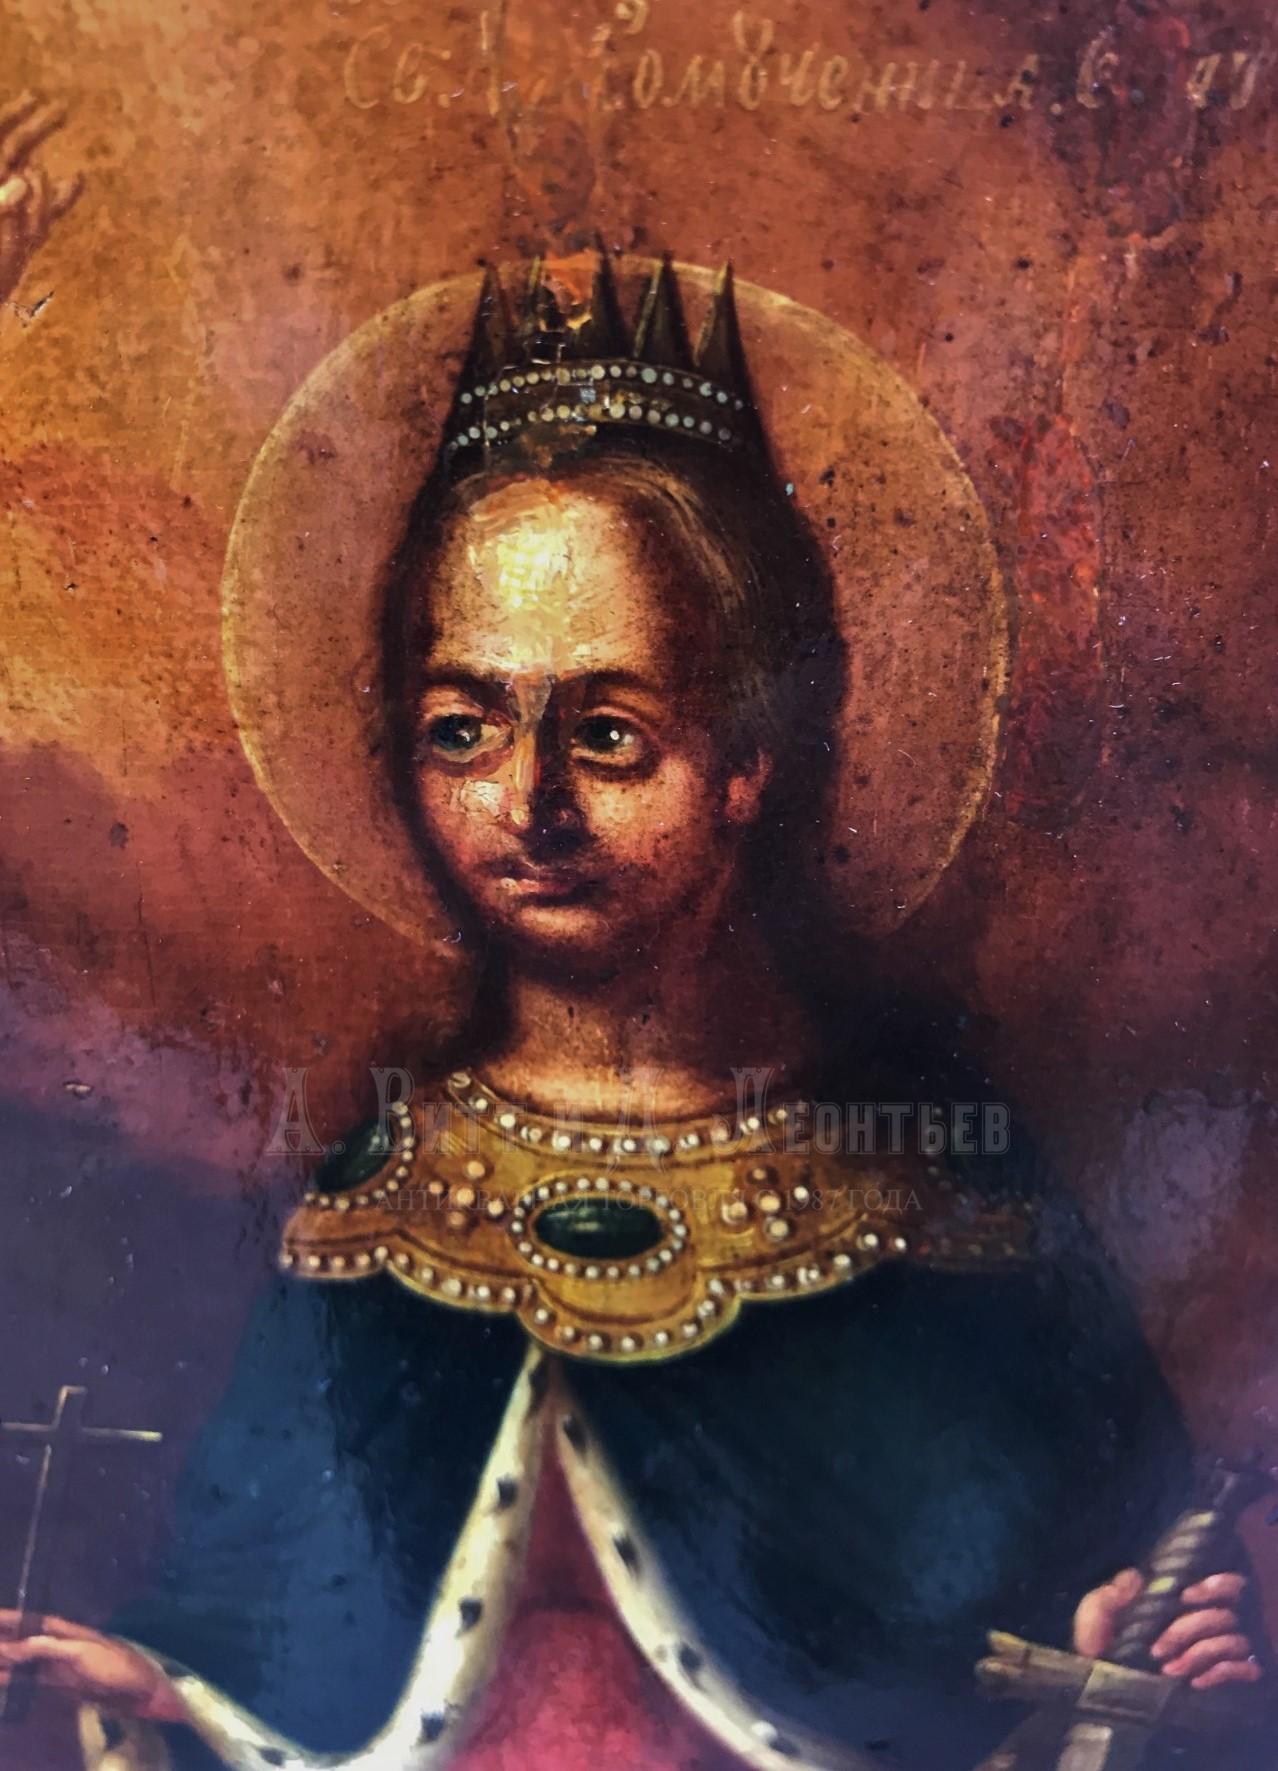 Антикварная старинная икона - Святая великомученица Екатерина и Святой Алексий Человек Божий